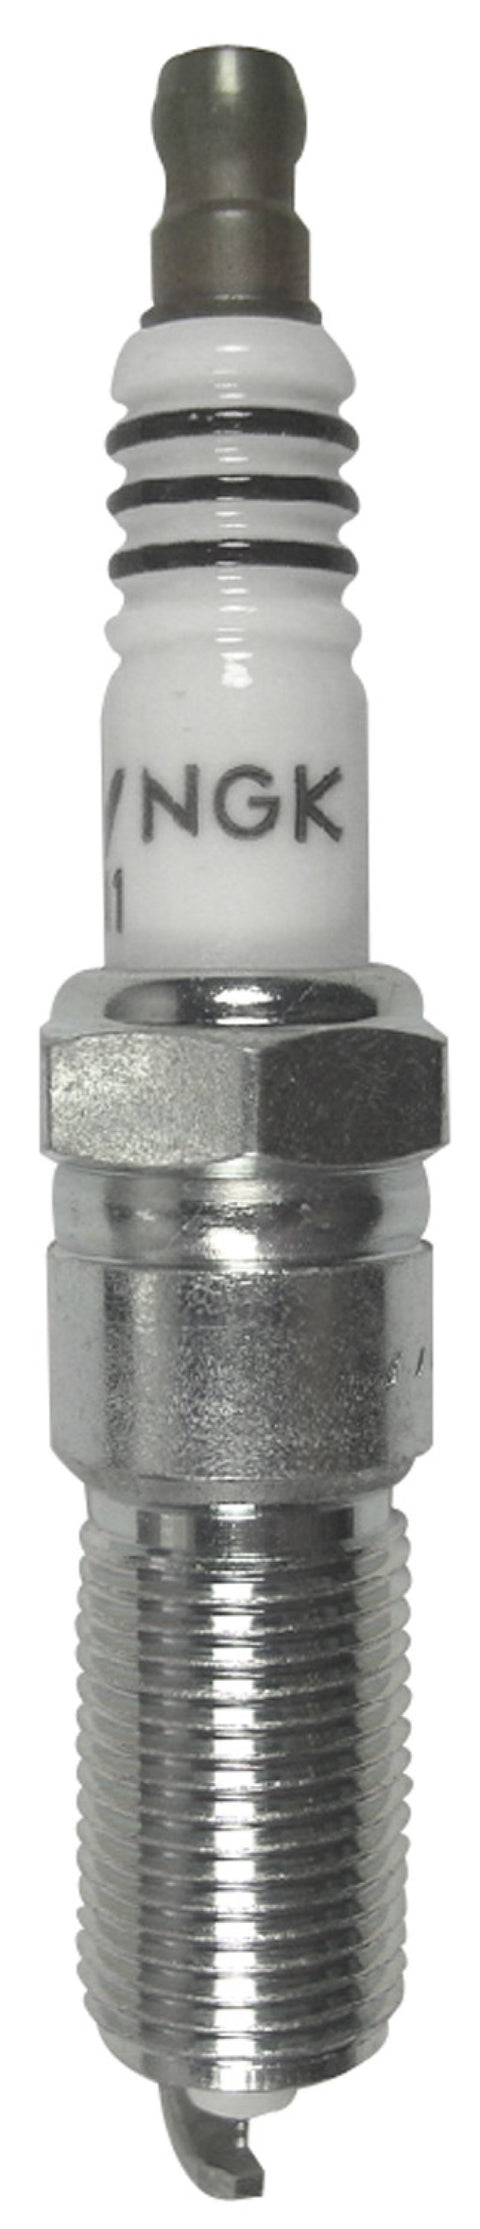 NGK Iridium Spark Plug Box of 4 (2315)